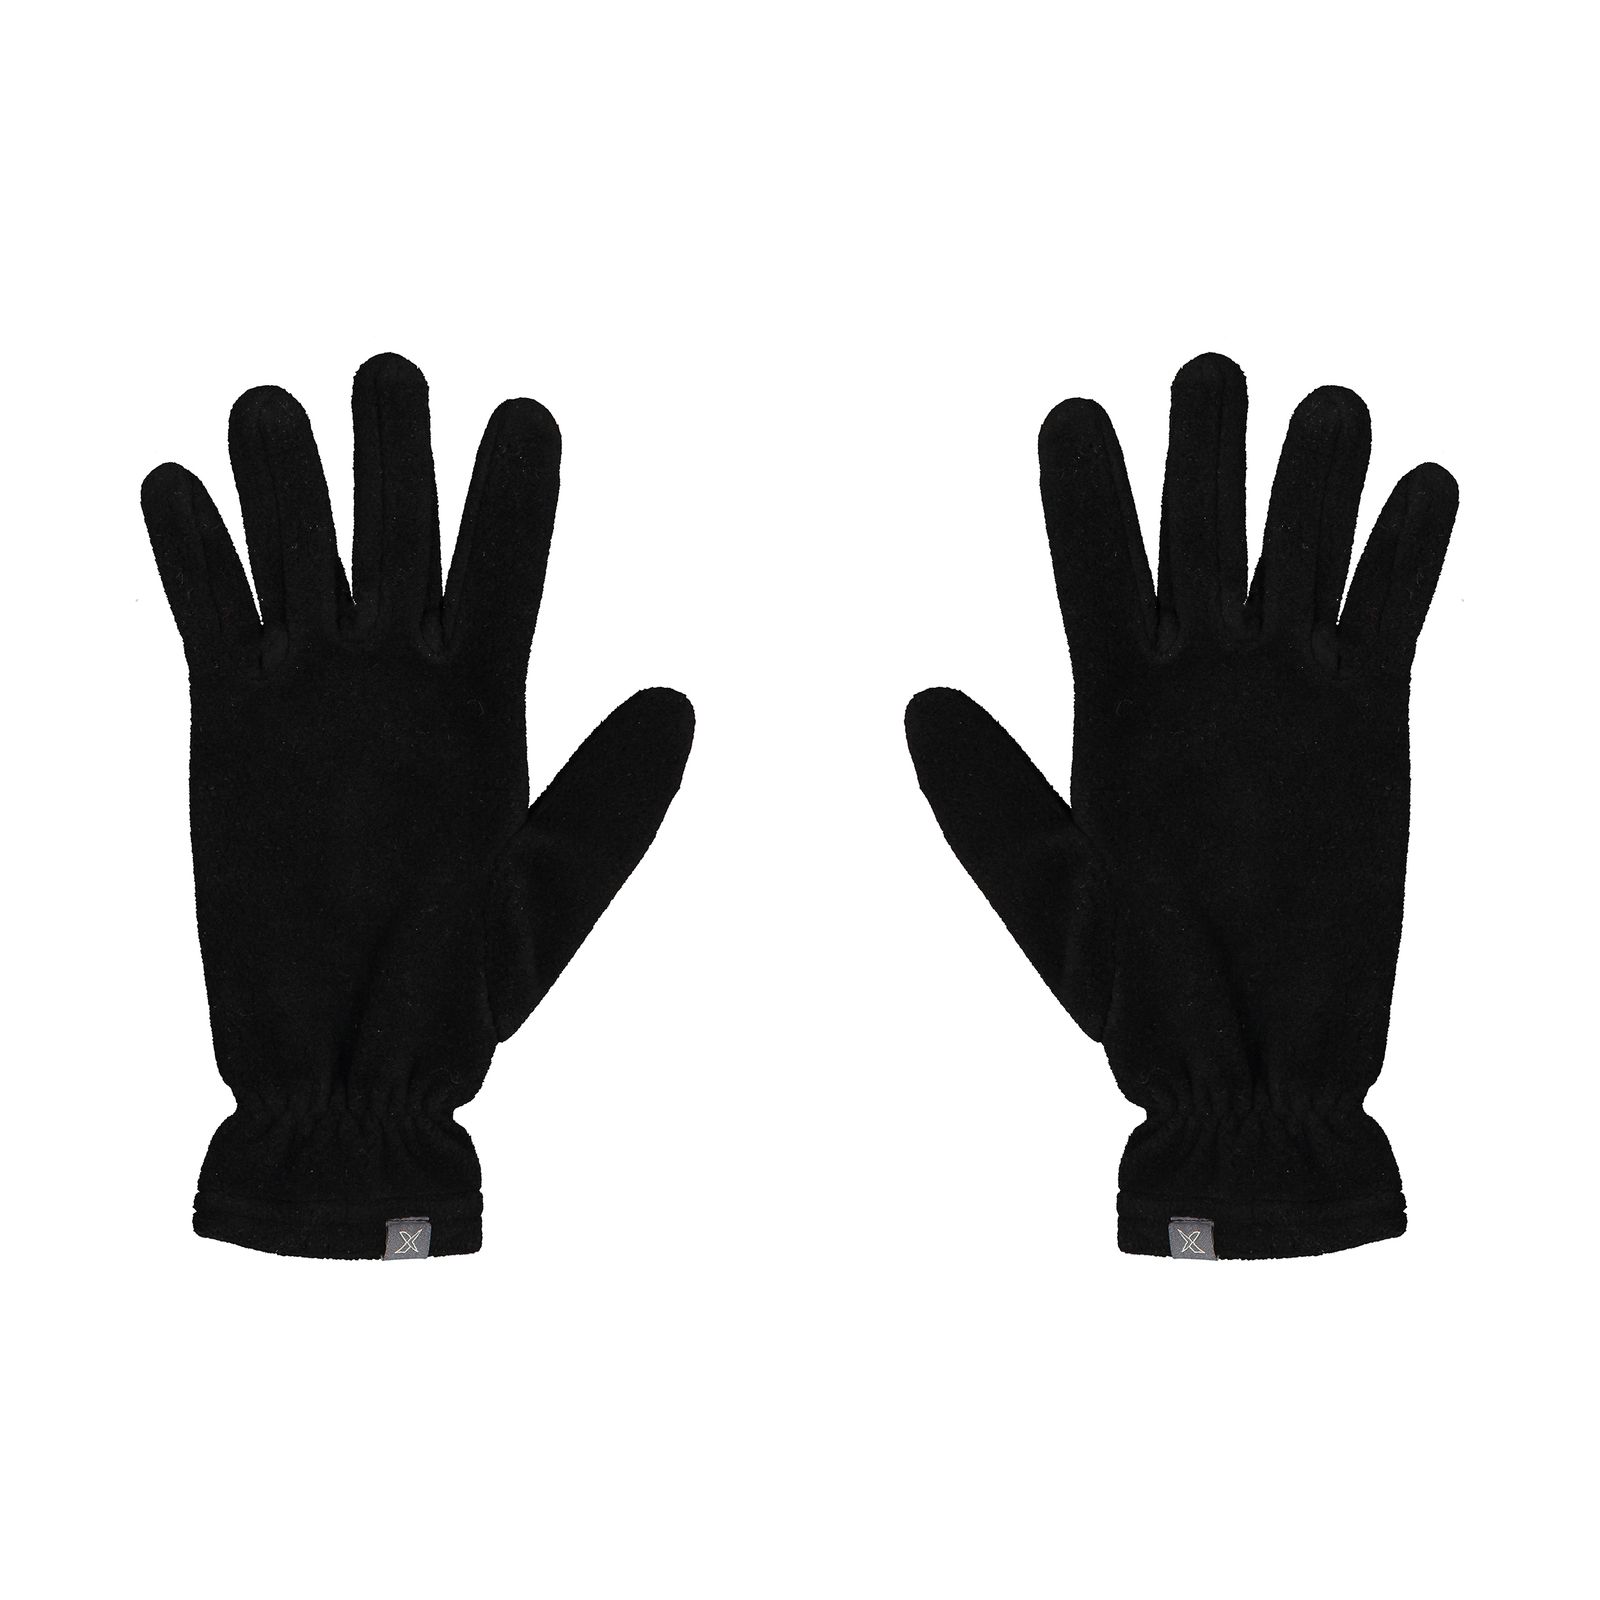 دستکش زنانه کینتیکس مدل 100223904 Black -  - 1